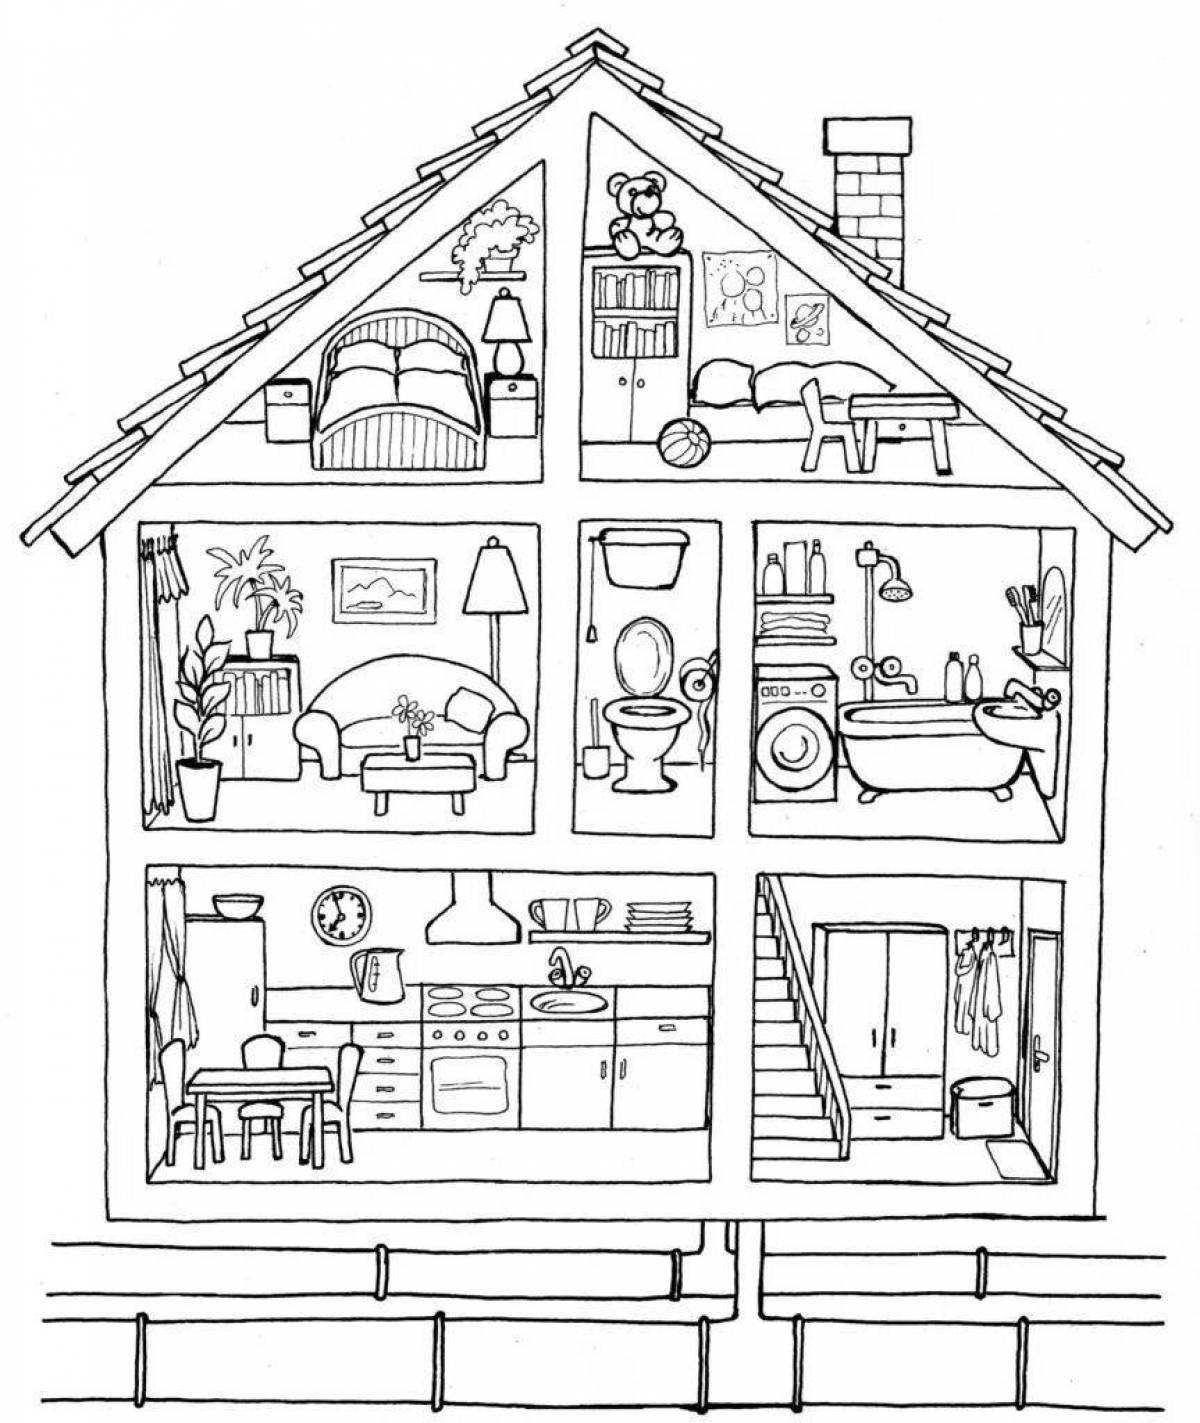 Деревянный кукольный домик с мебелью красной раскраски разборный, Дворики